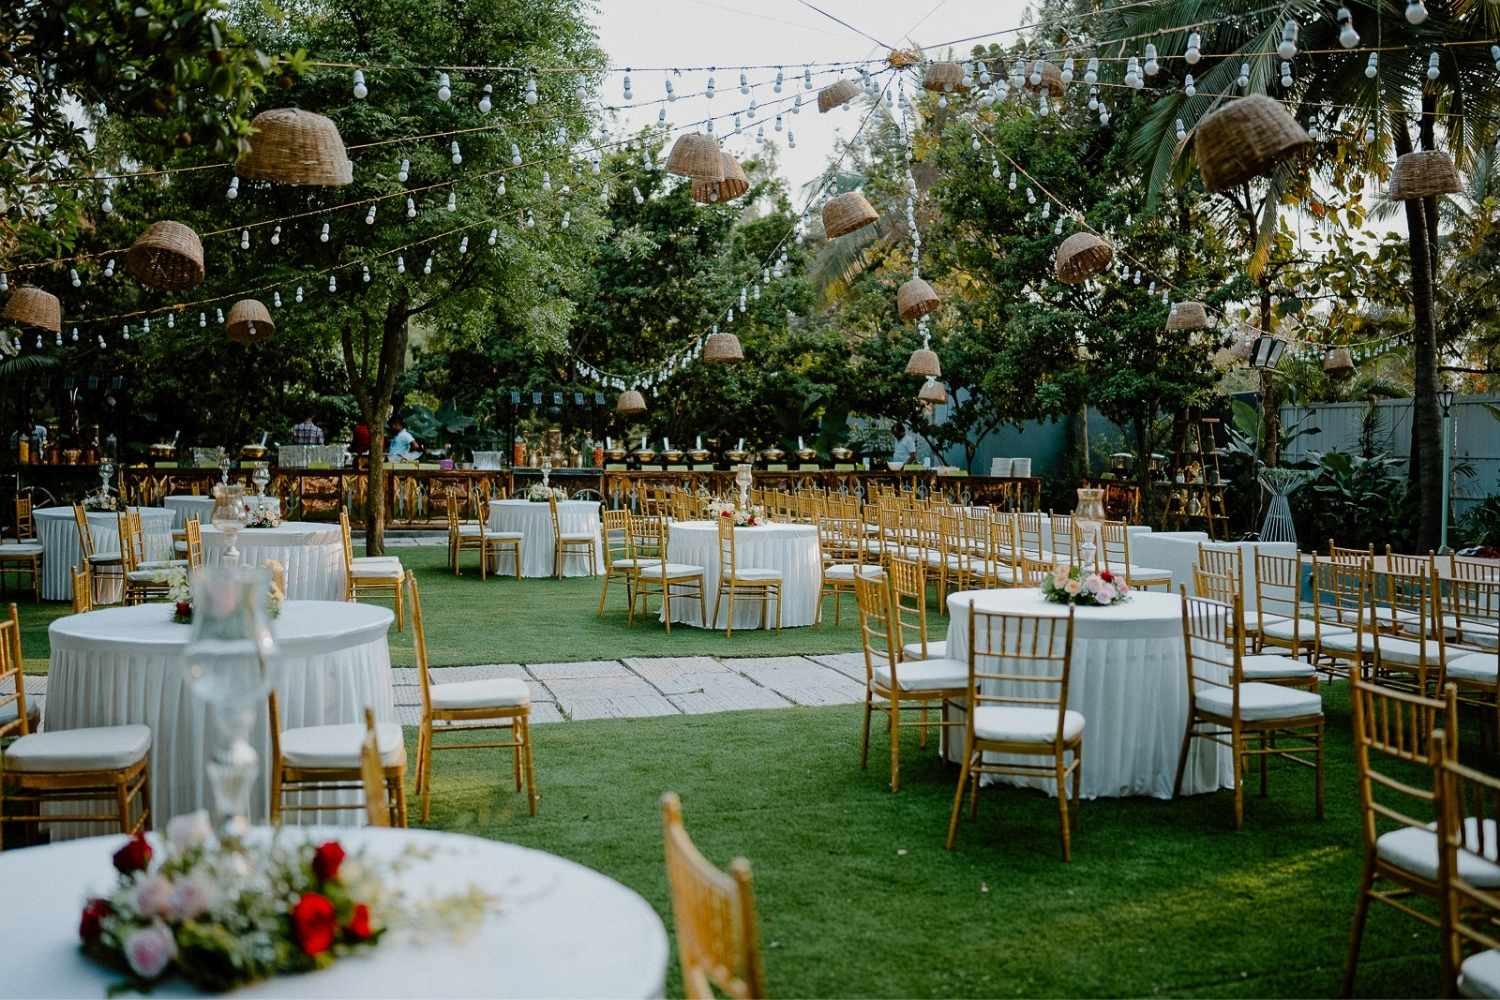 Farmhouse Social, an Outdoor wedding venue in Bangalore